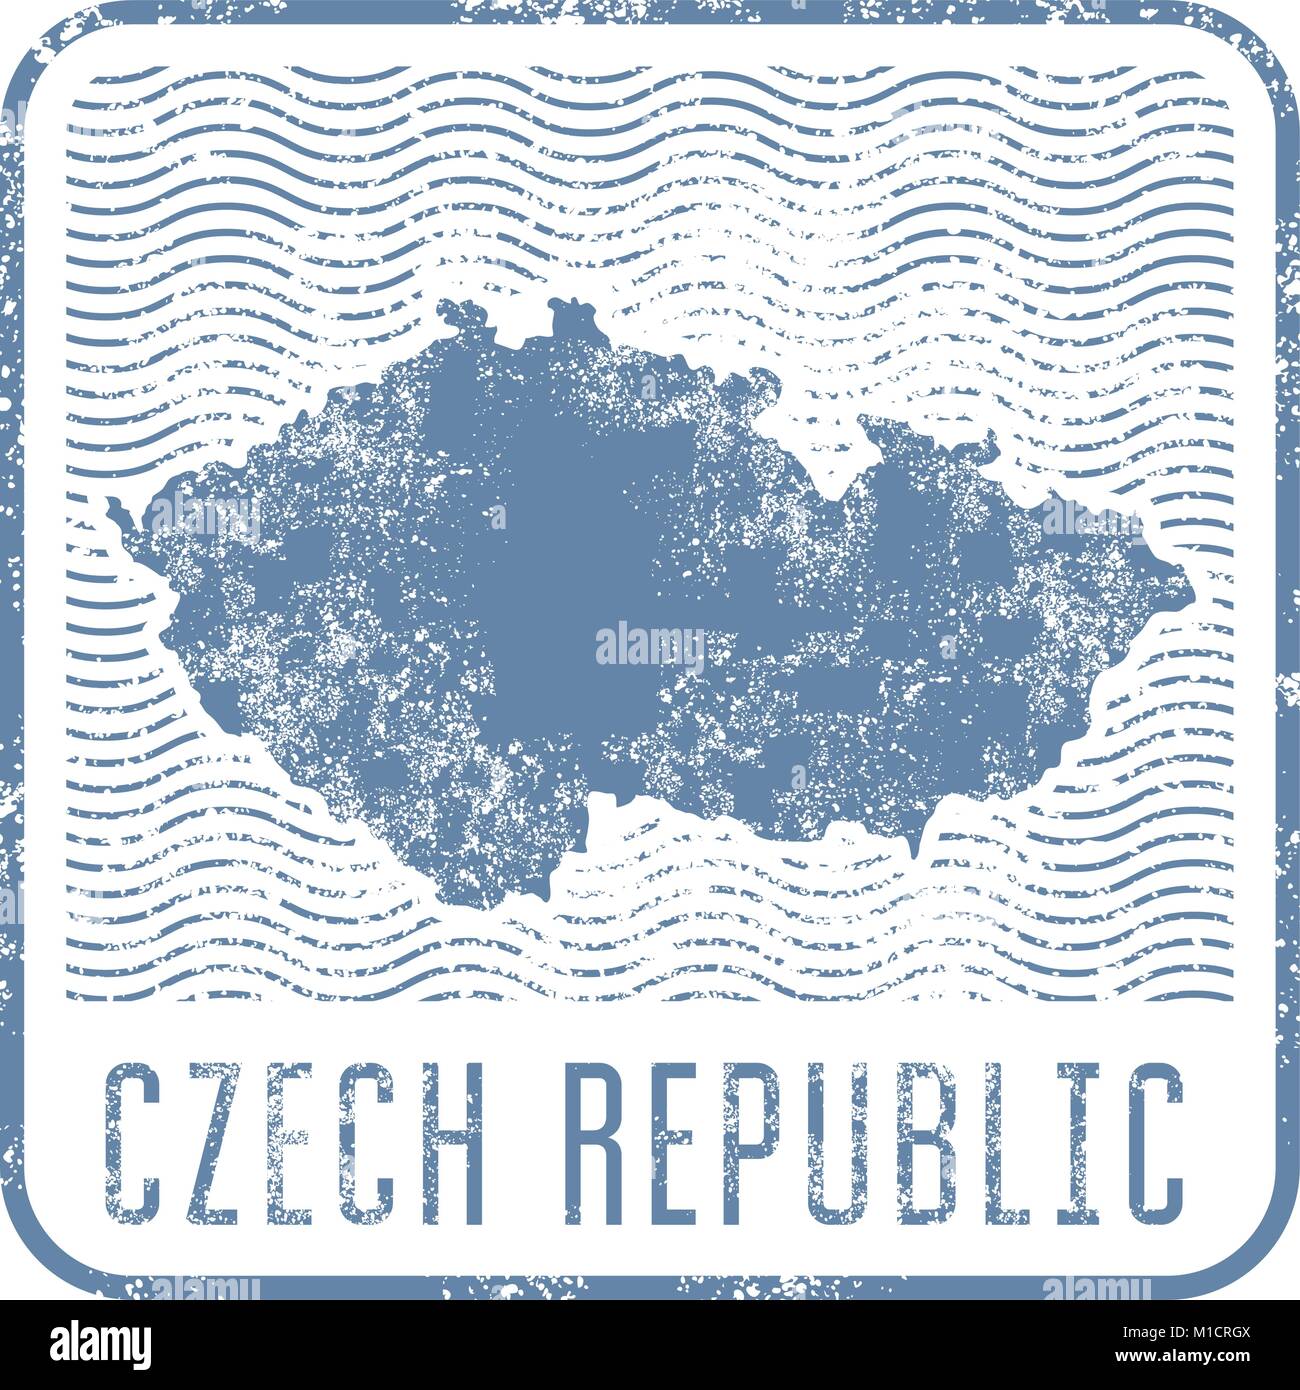 République tchèque billet d'horodateur avec silhouette de carte de République Tchèque Illustration de Vecteur